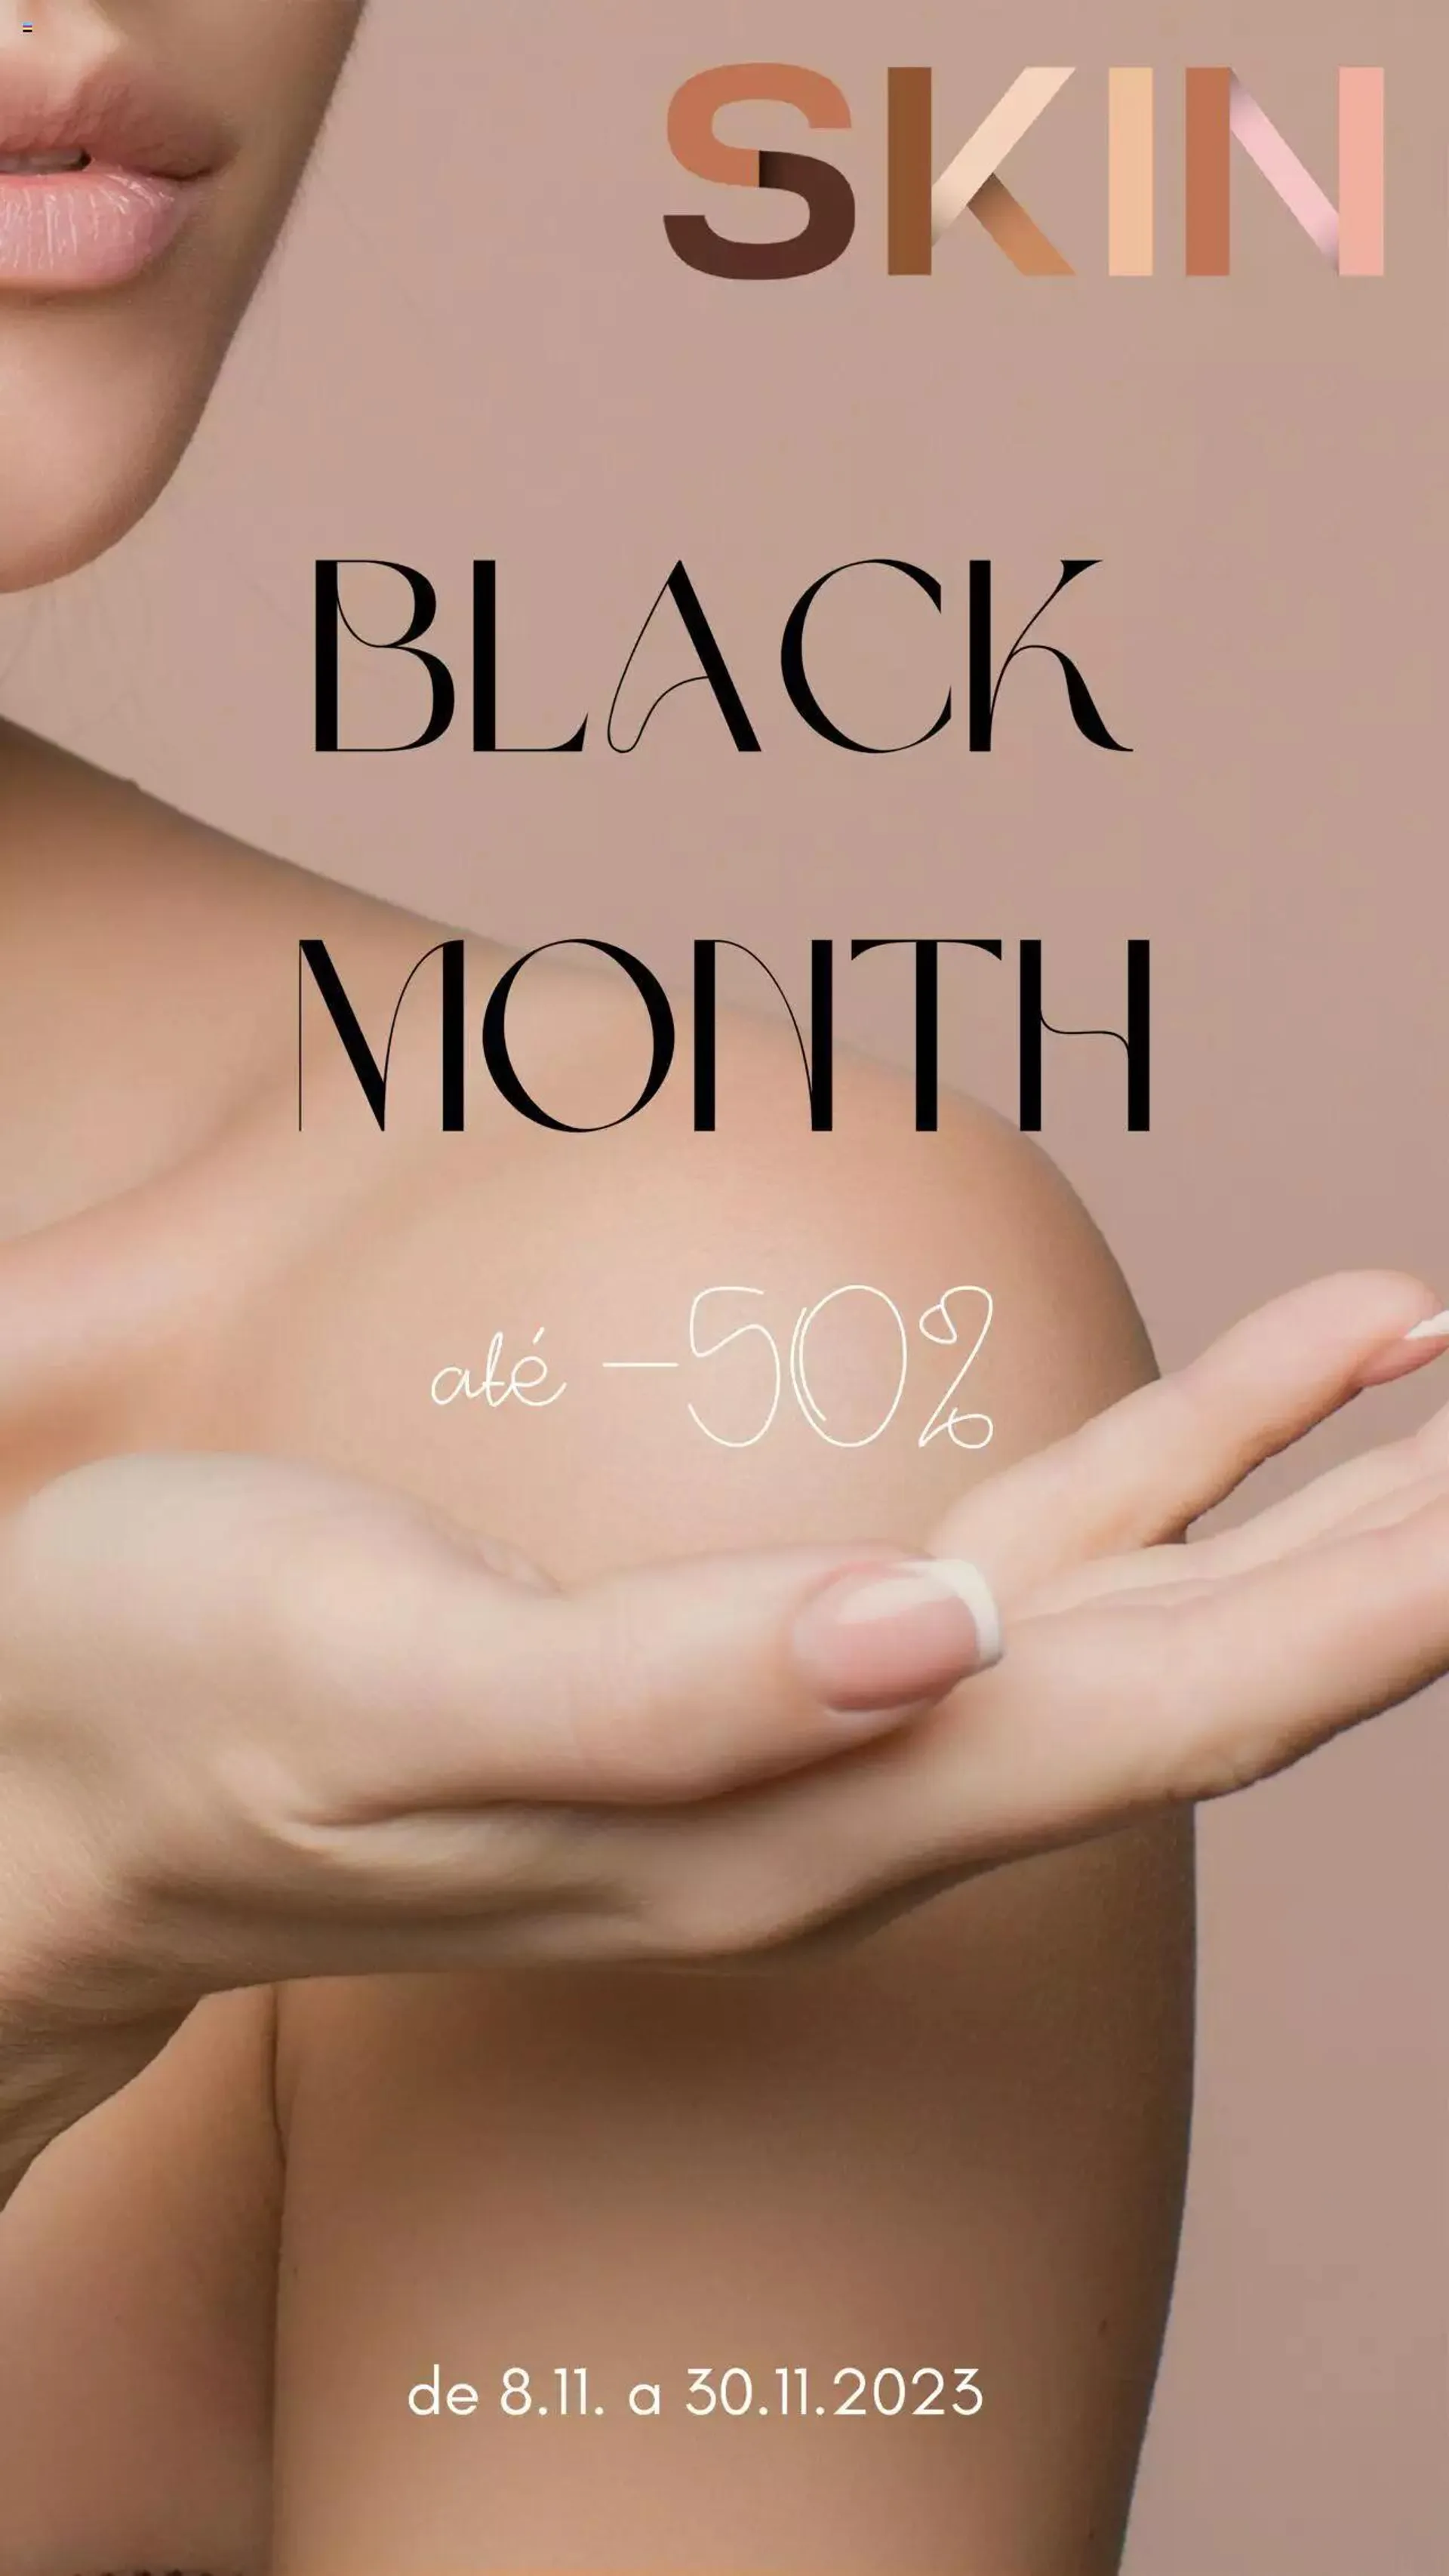 Skin.pt Black Month - 0